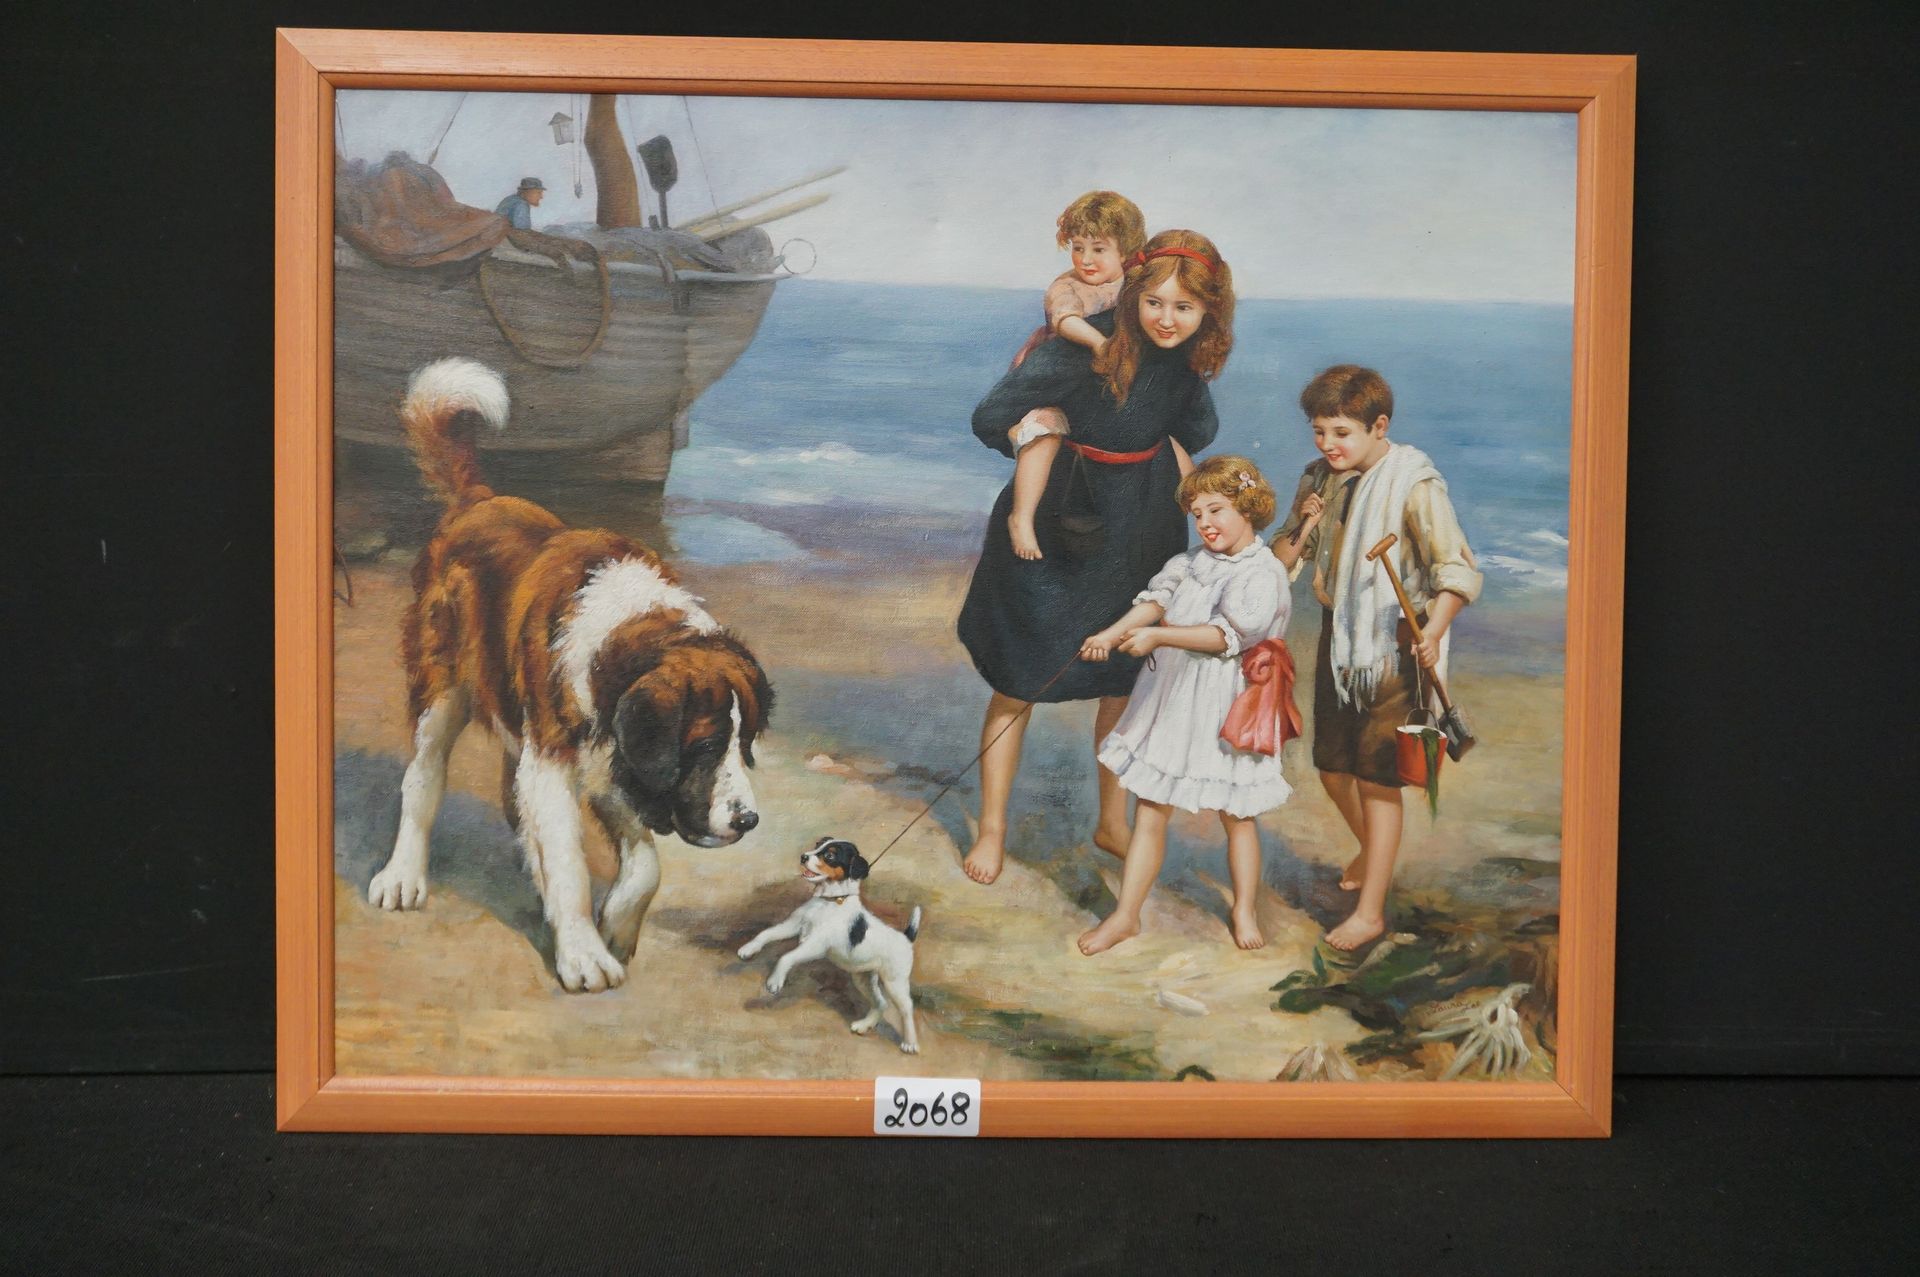 ROMANTISCH SCHILDERIJ 
Romantisches Gemälde - "Mädchen mit Hunden" - Öl auf Lein&hellip;